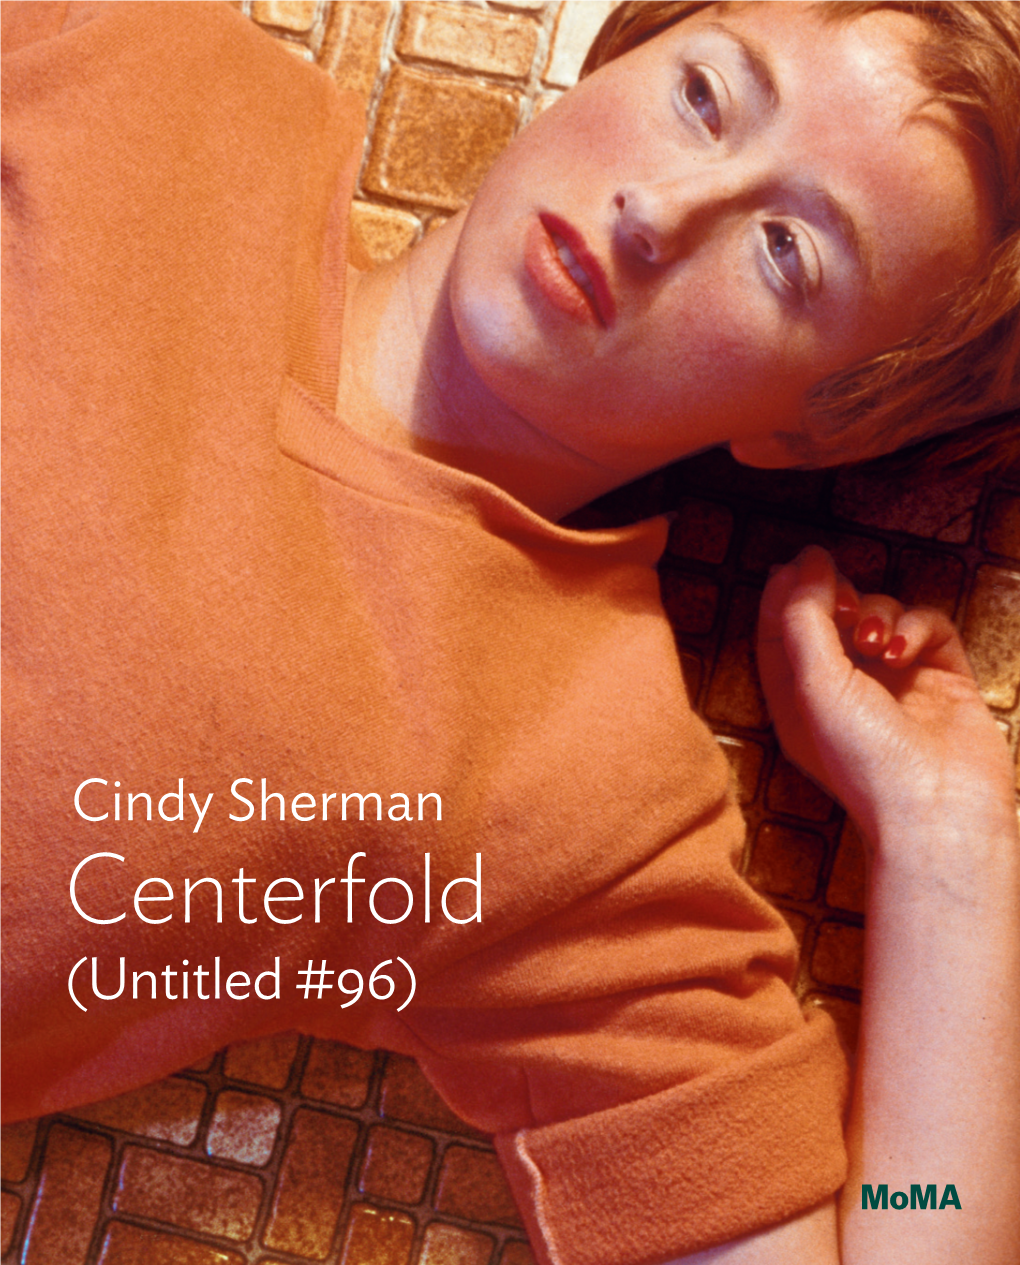 Cindy Sherman Centerfold (Untitled #96)